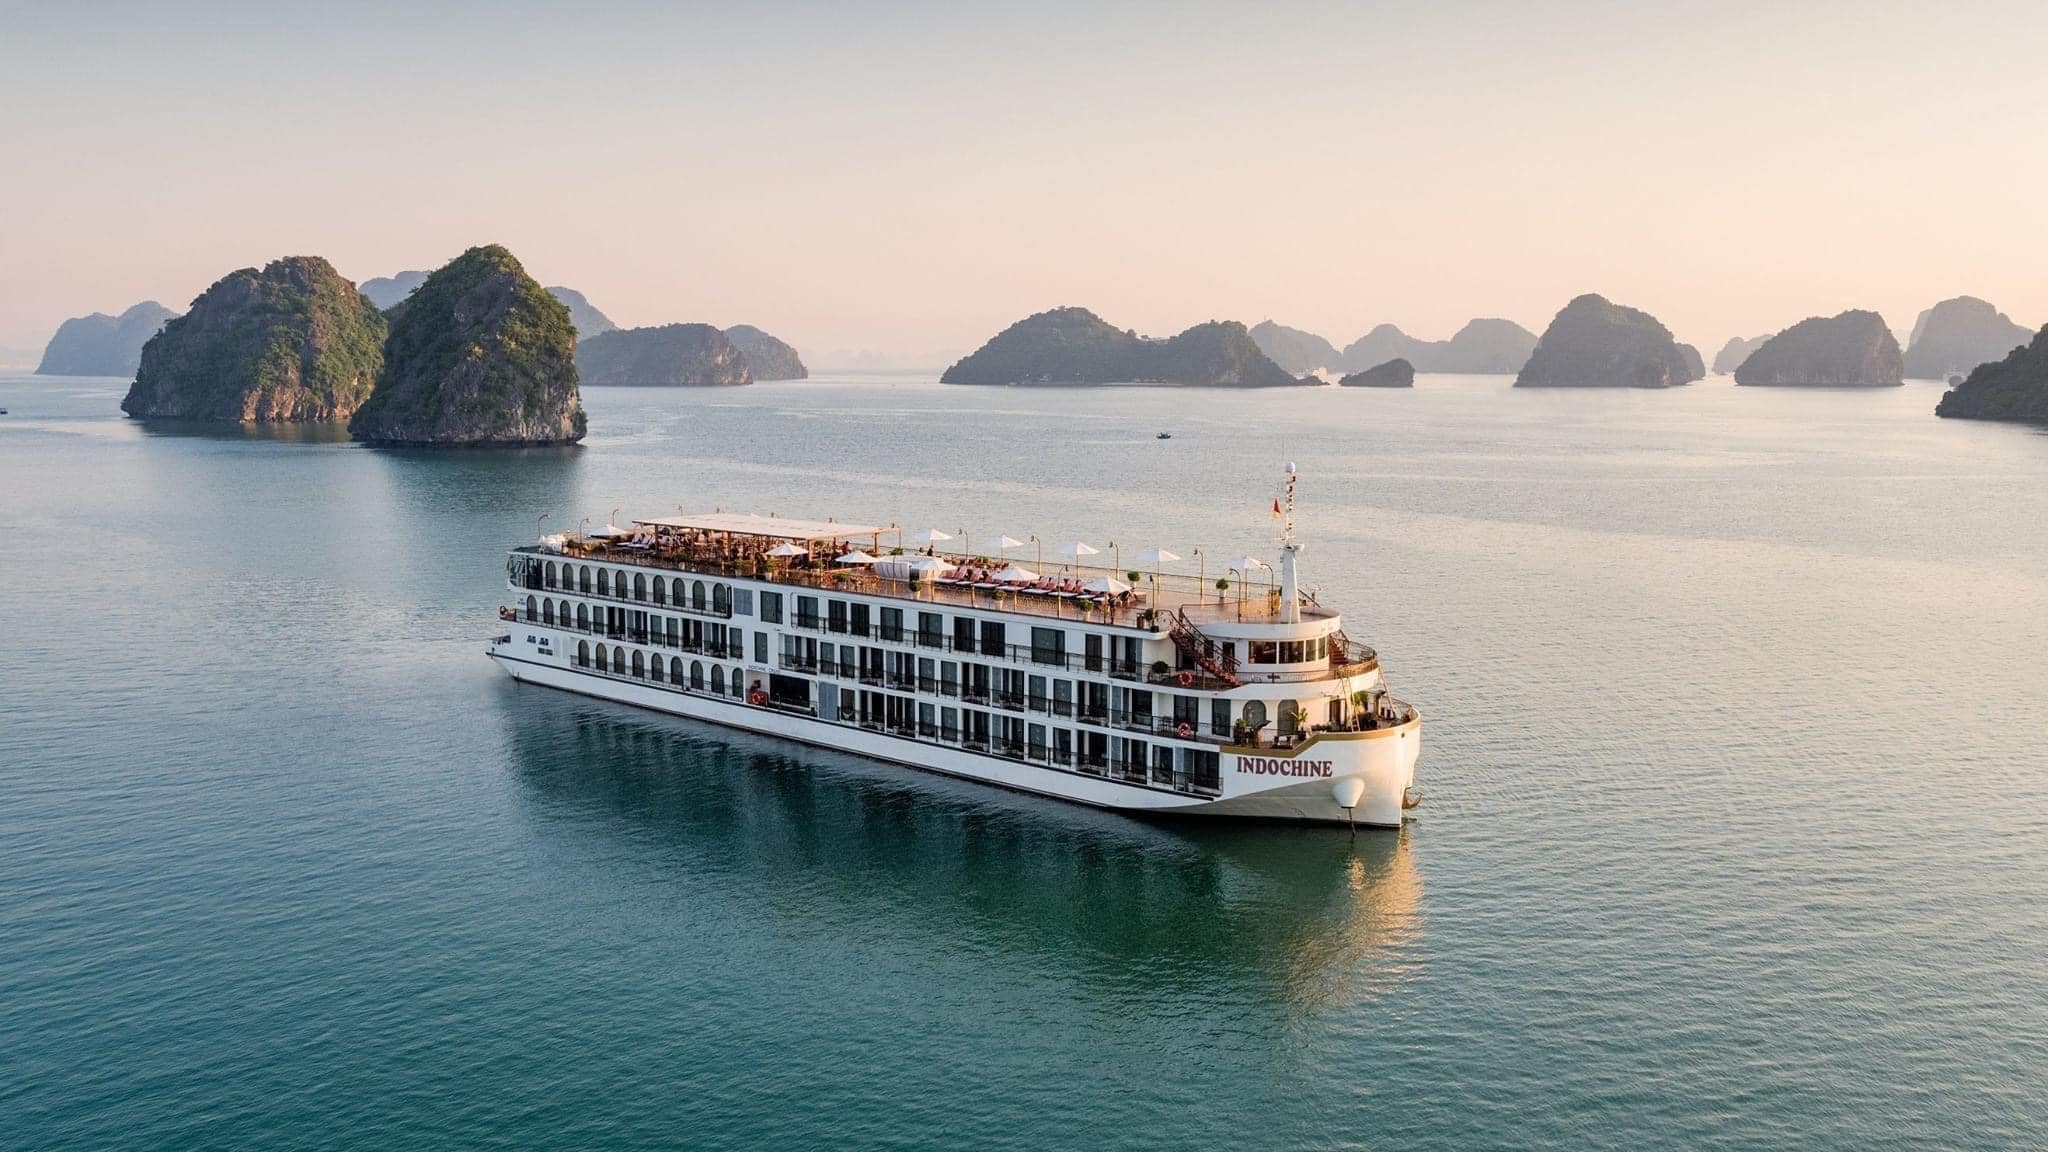  Top 10 du thuyền đẹp nhất vịnh Hạ Long | Du thuyền Indochine 